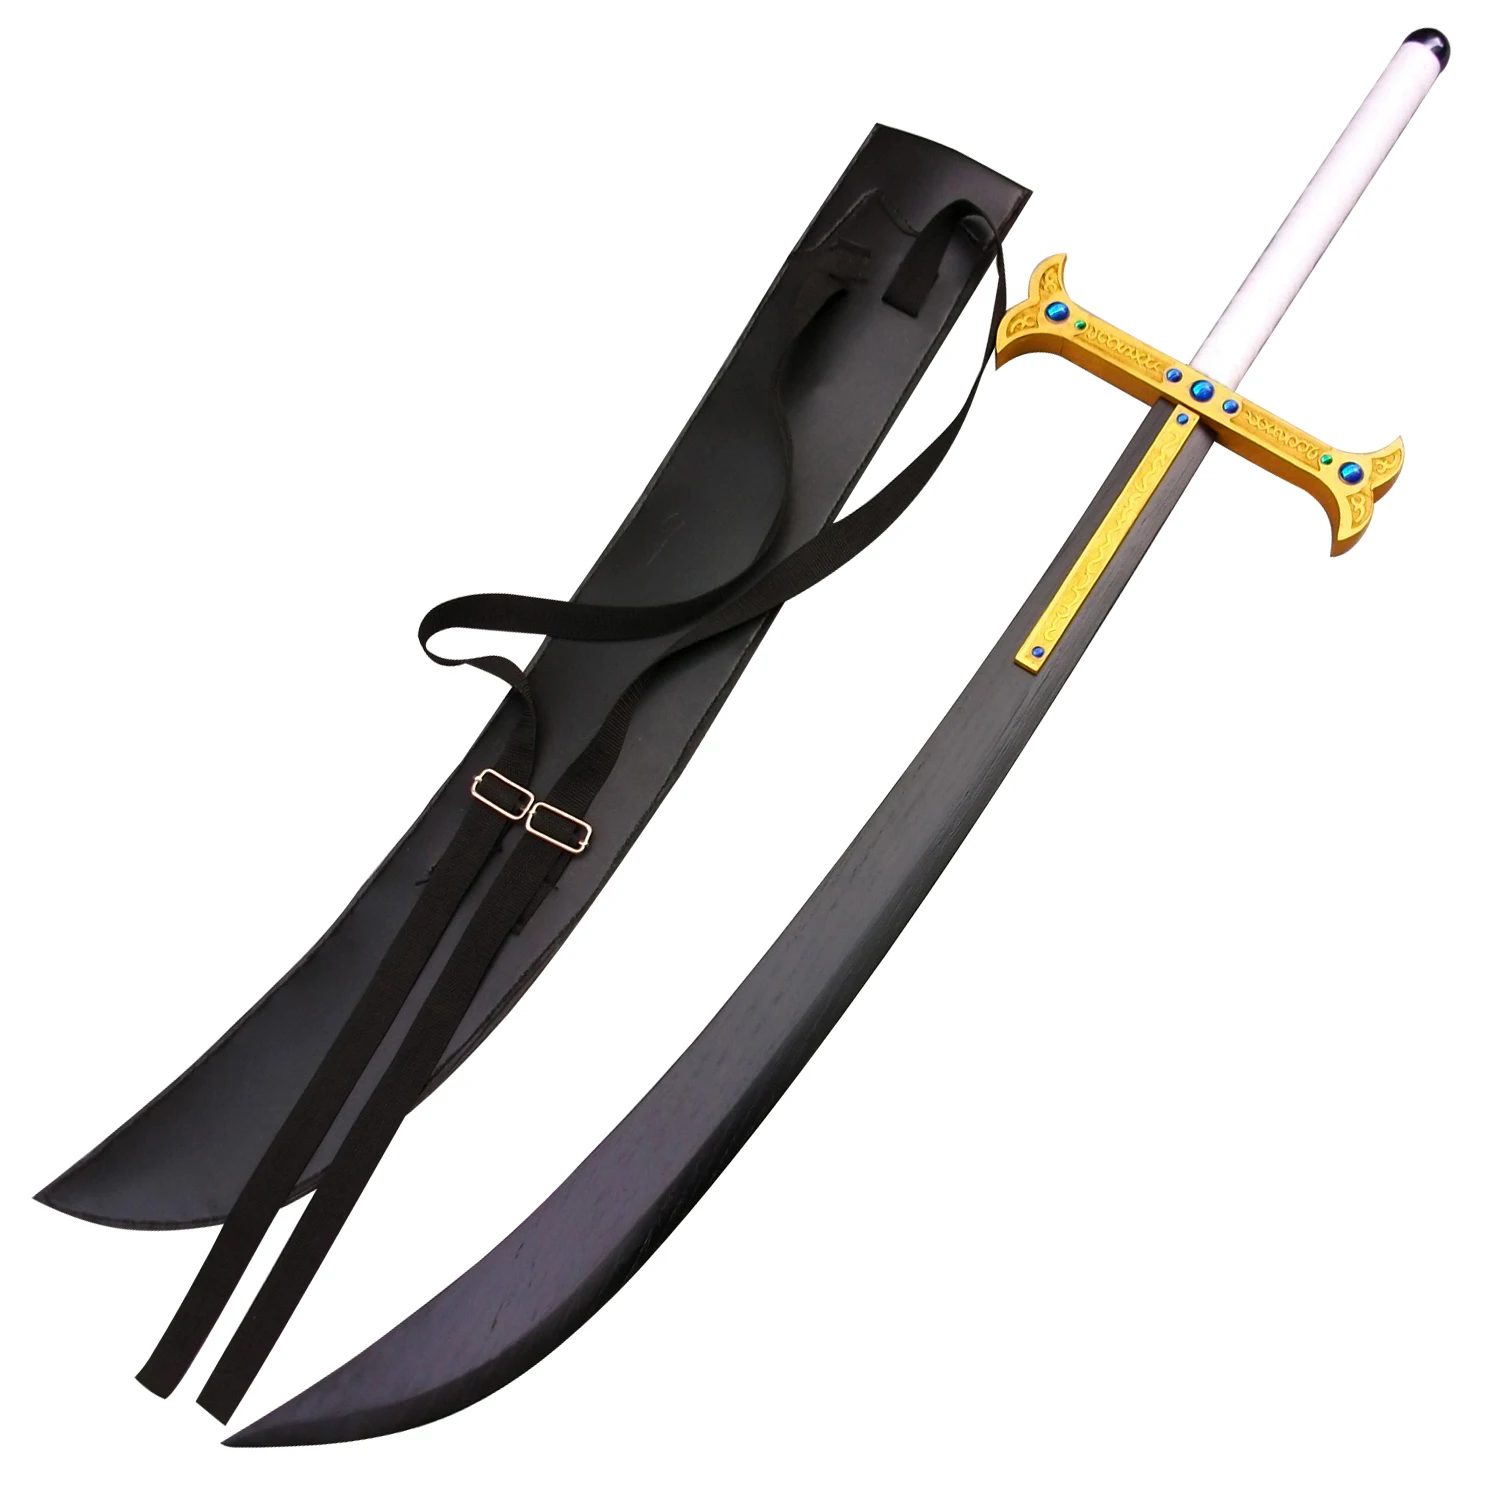 24cm Night Dracule Mihawk OP One Metal Blade Black Sword Piece